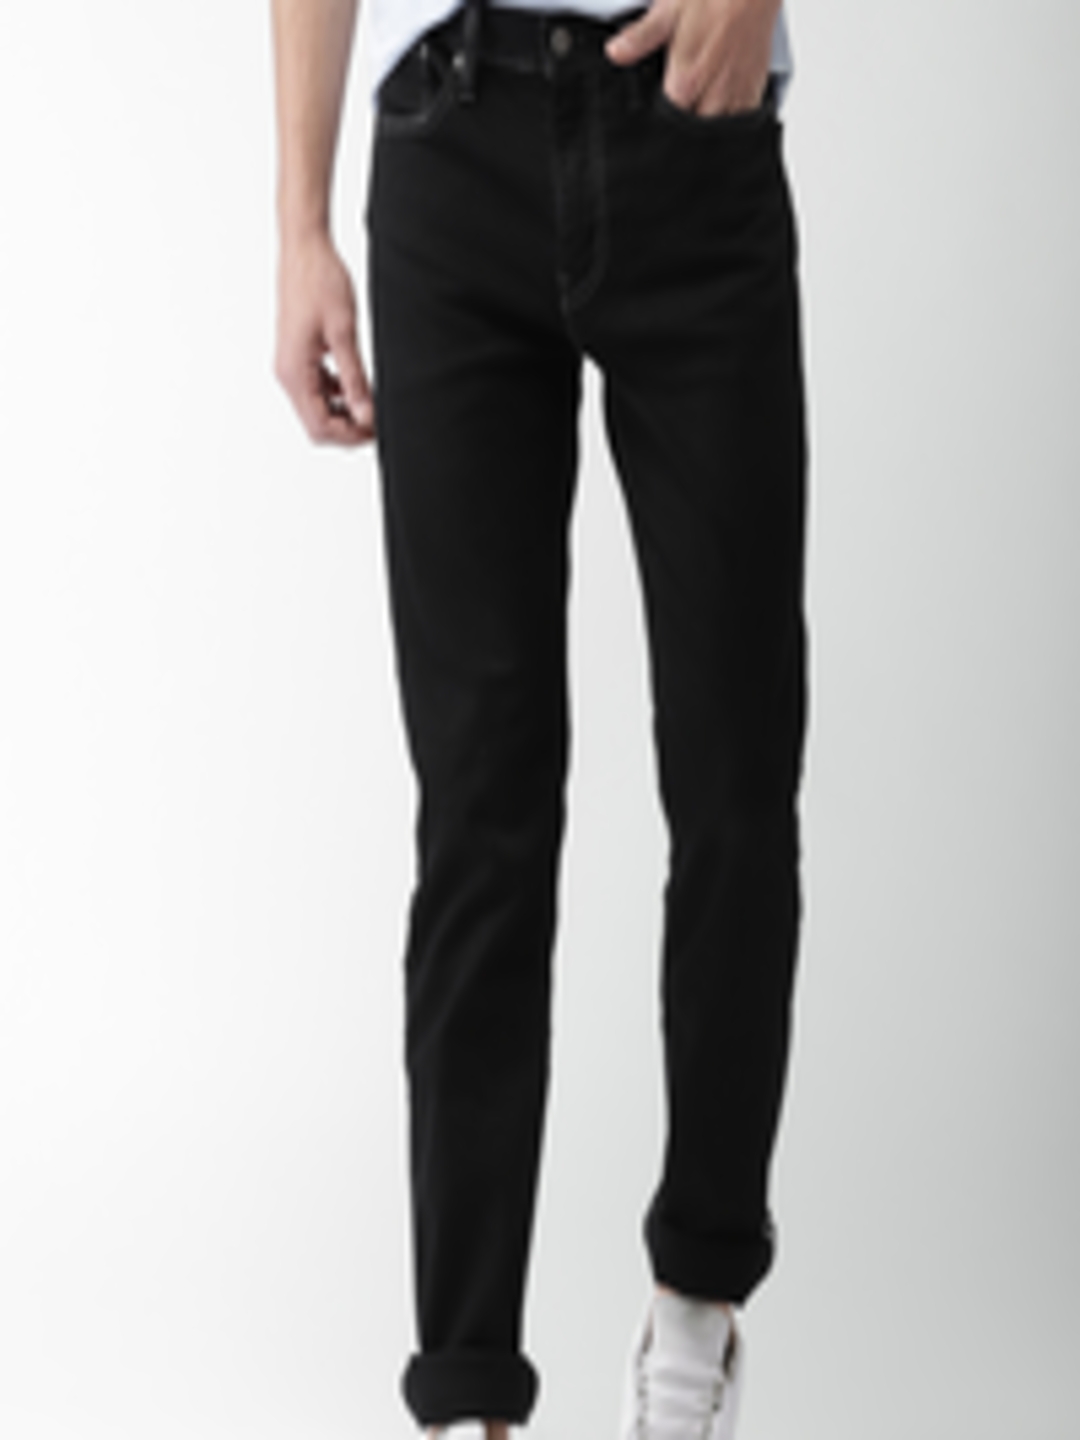 Buy Levis Men Black Slim Fit Low Rise Clean Look Stretchable Jeans 511 ...